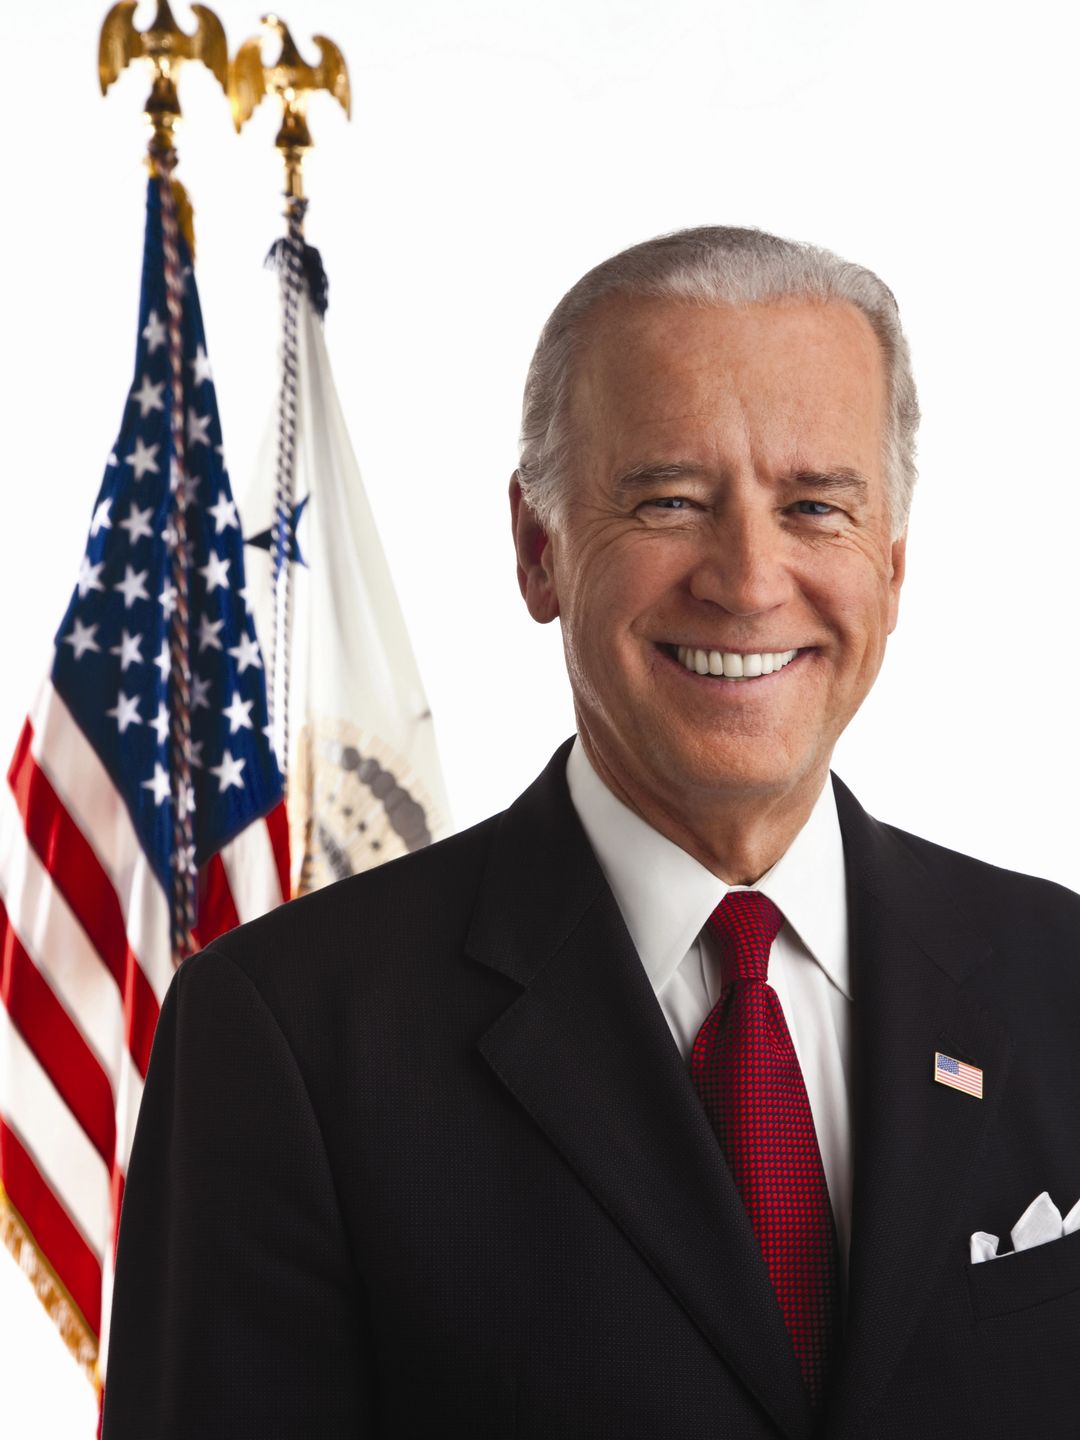 Joe Biden appearance